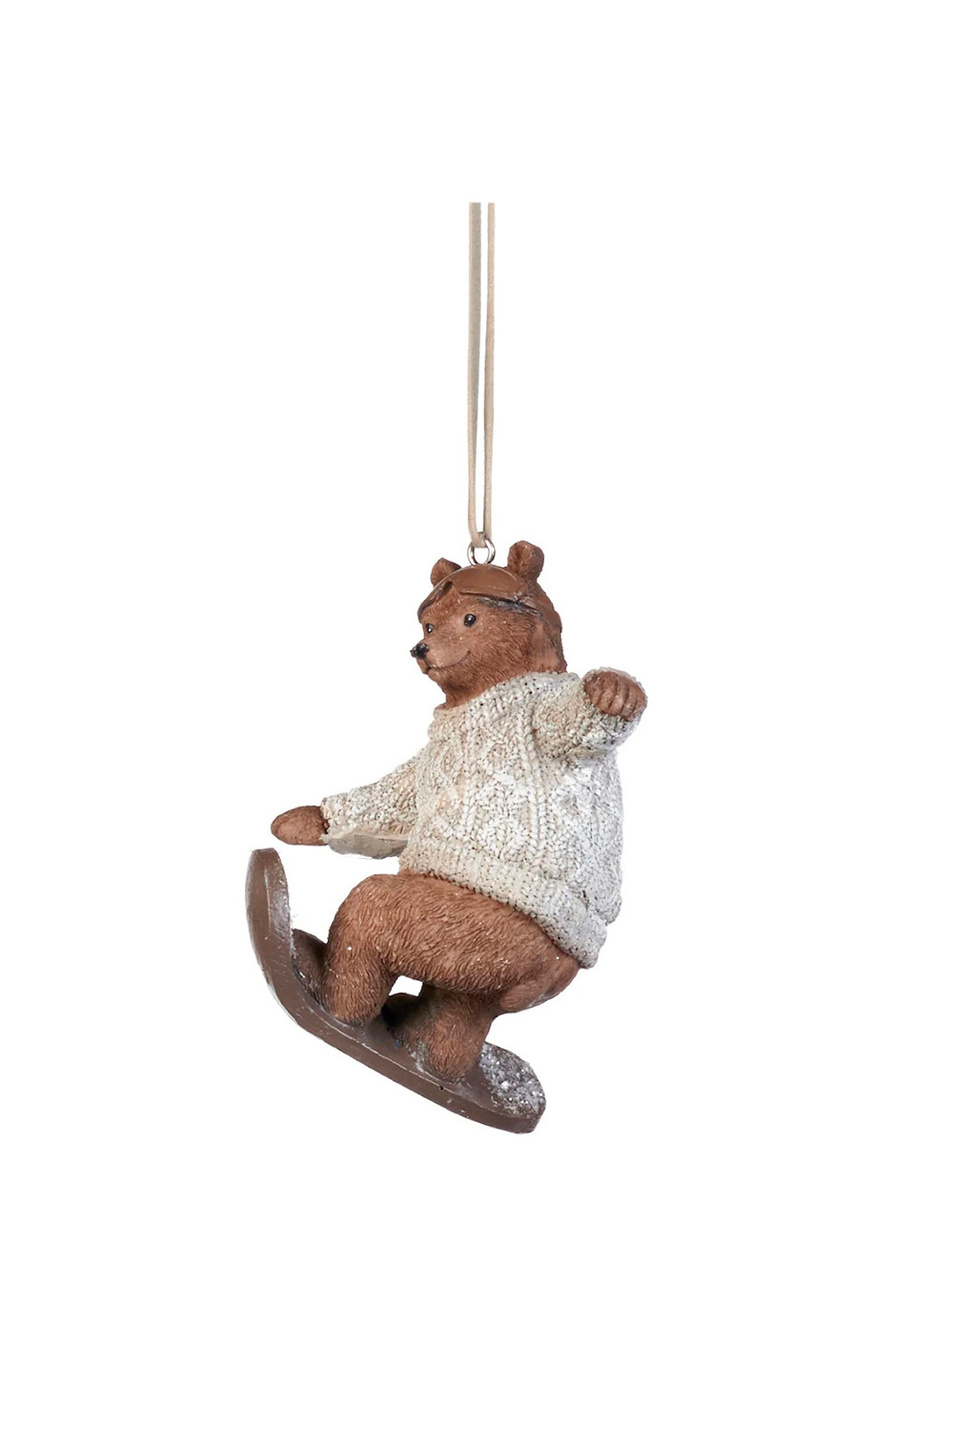 Не имеет пола Goodwill Елочная игрушка "Медведь на сноуборде", 10 см (цвет ), артикул D 44068_2 | Фото 1